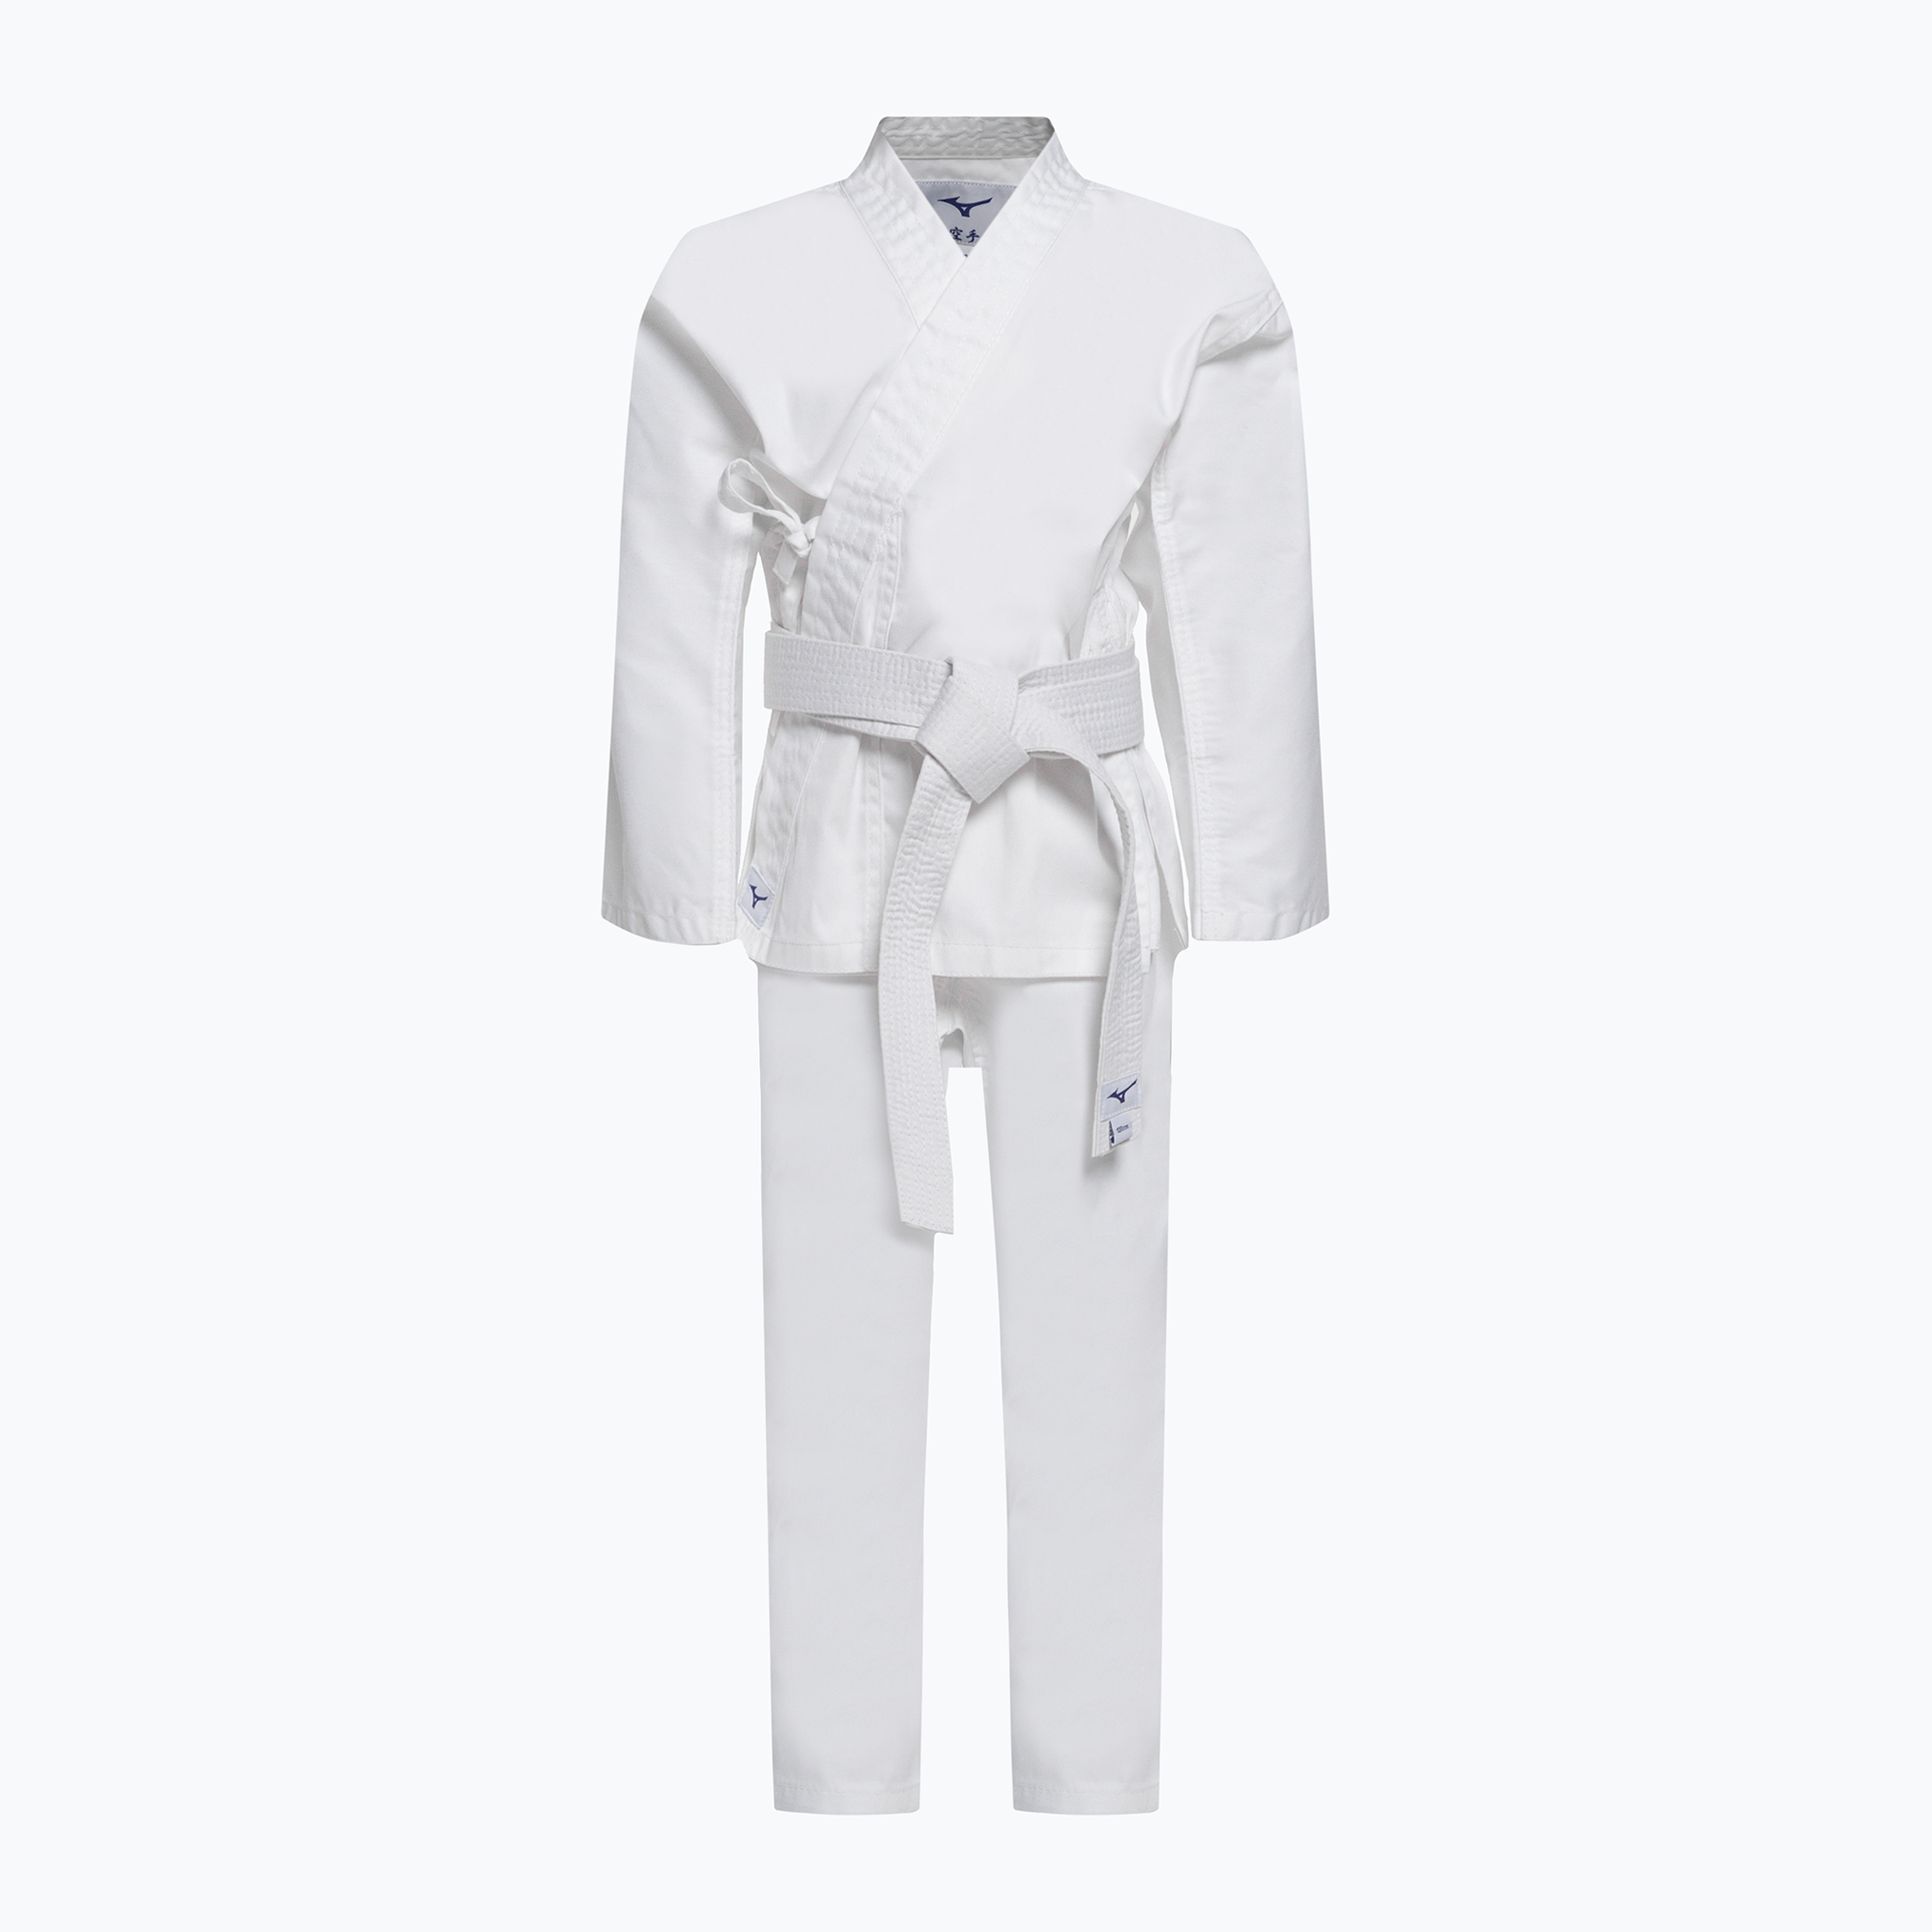 Zdjęcia - Ubrania do sportów walki Mizuno Karategi z paskiem  Kiai Karategi białe 22GG2K200301160 | WYSYŁKA W 